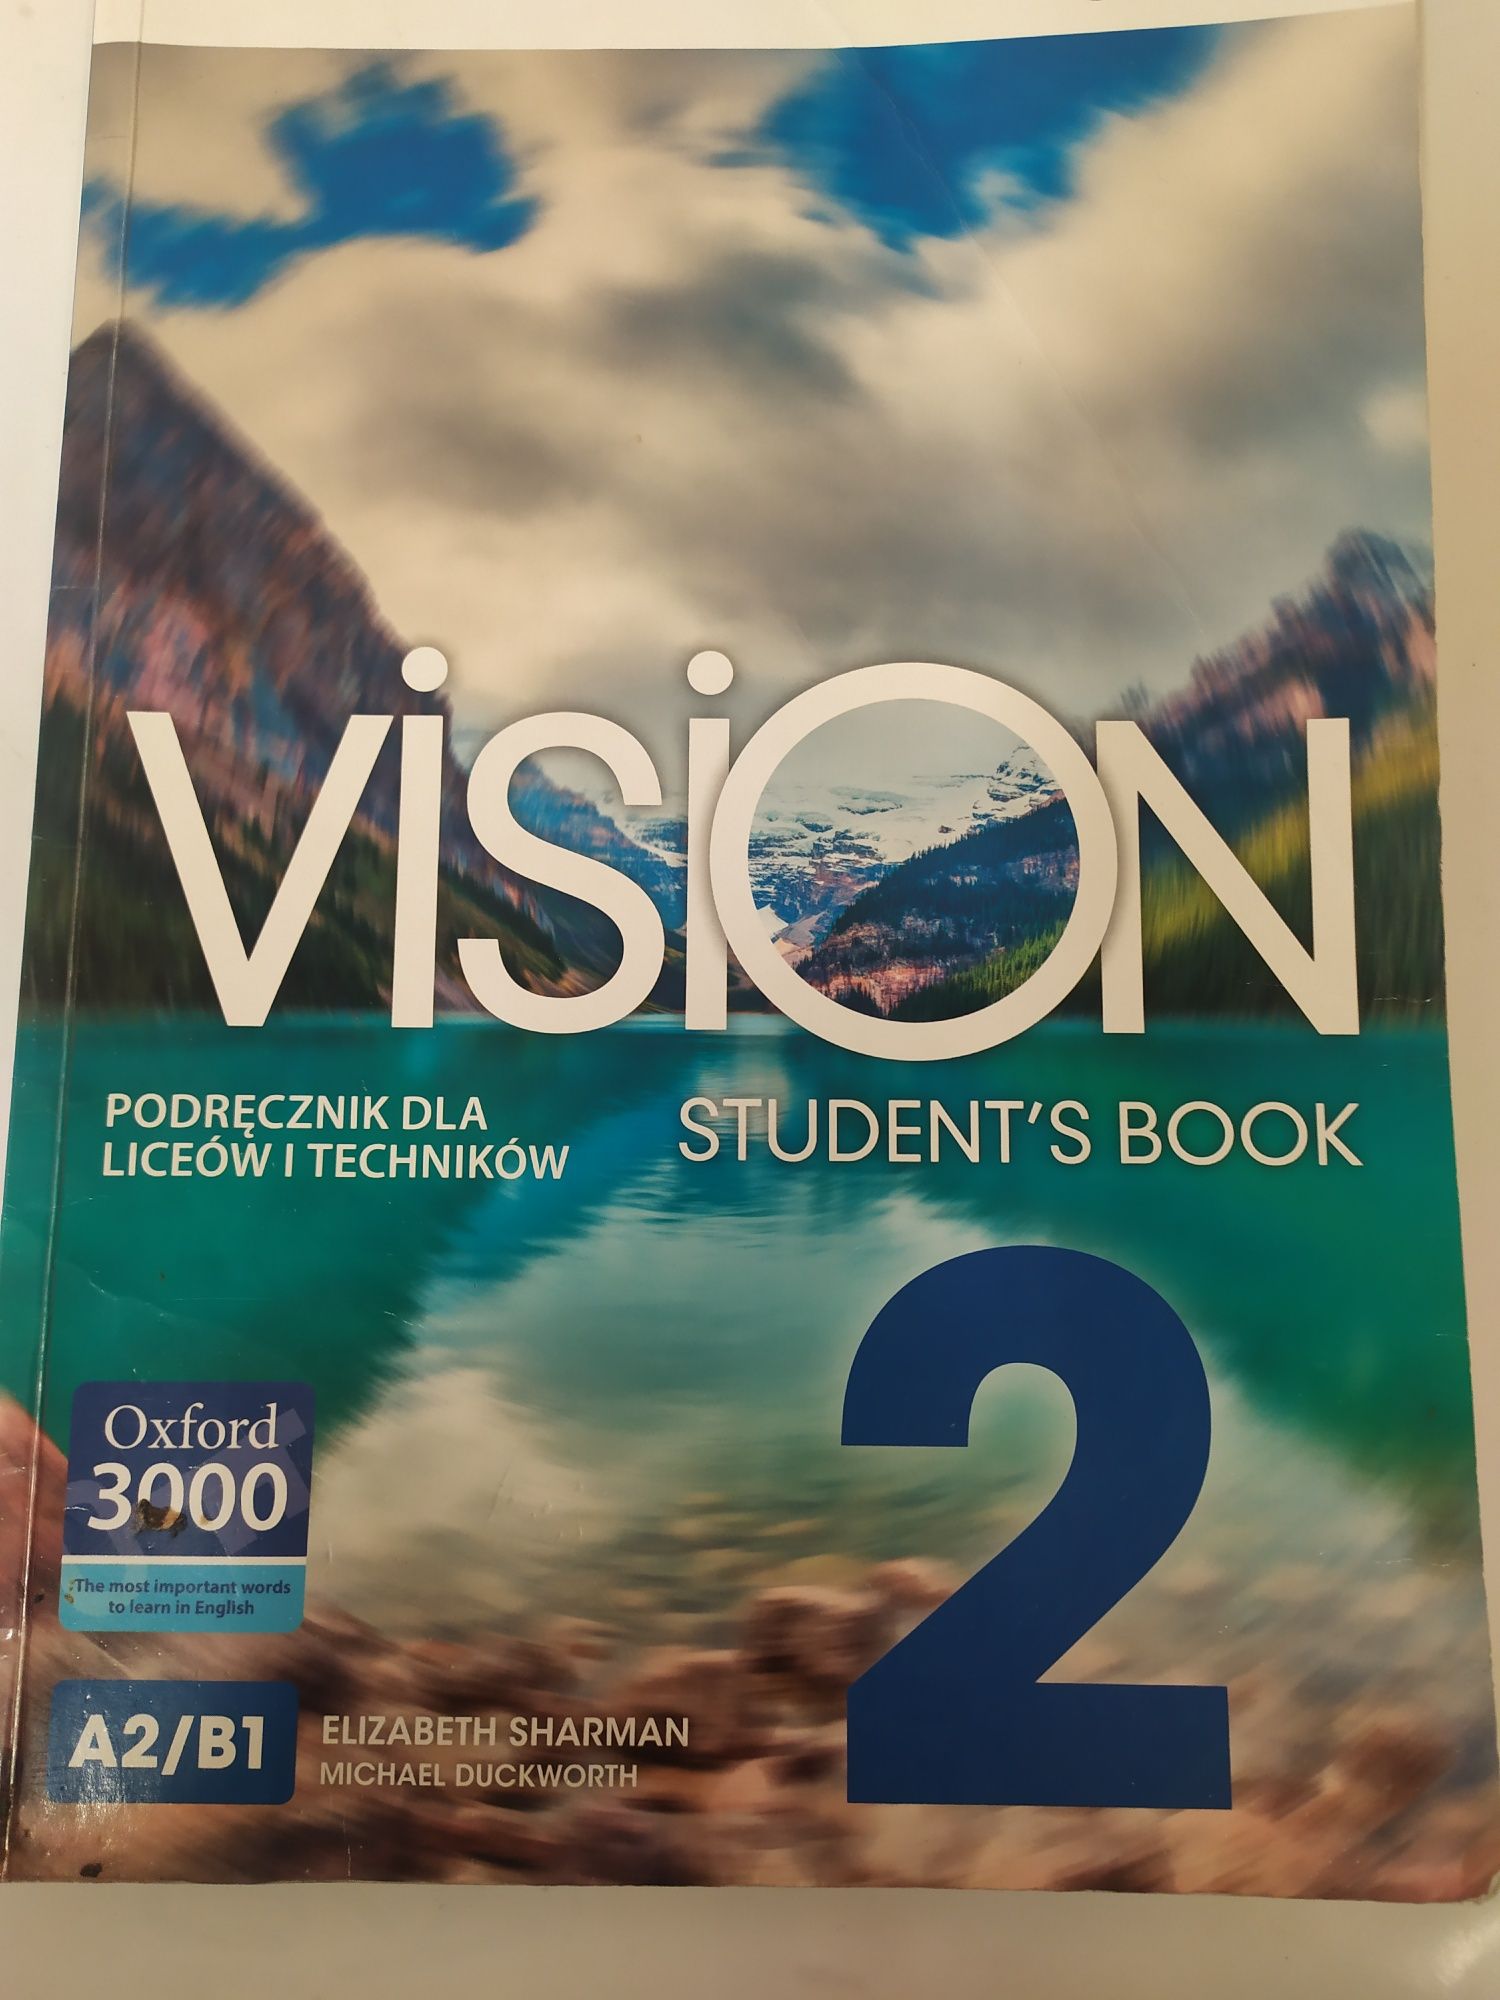 Vision podręcznik dla liceów i techników